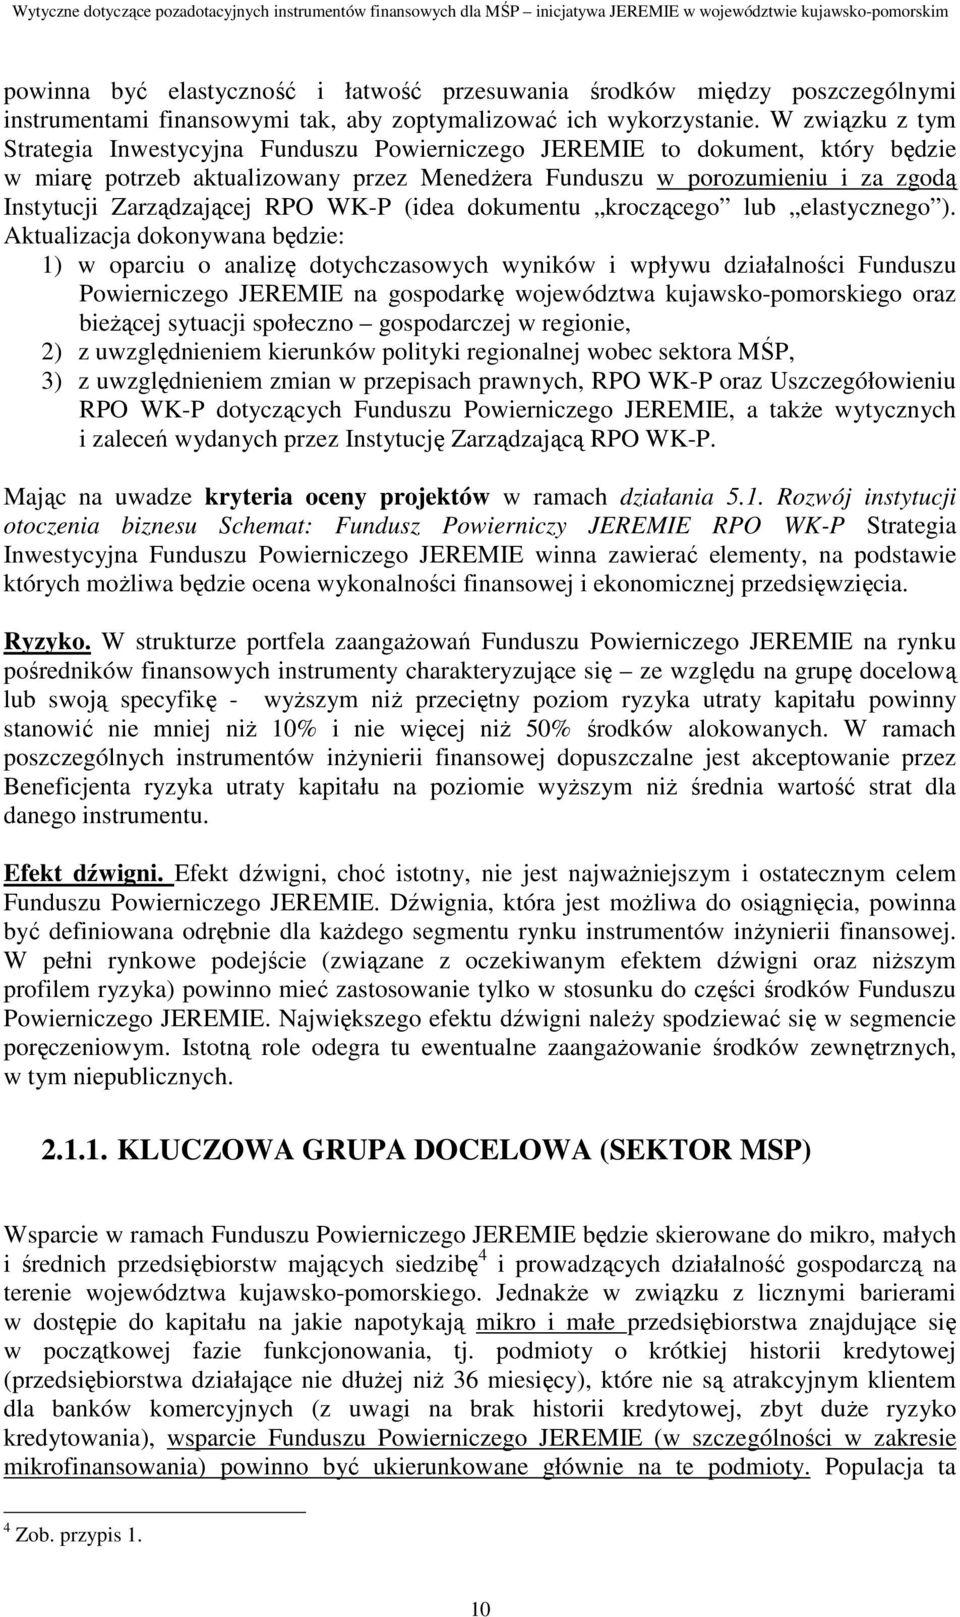 Zarządzającej RPO WK-P (idea dokumentu kroczącego lub elastycznego ).